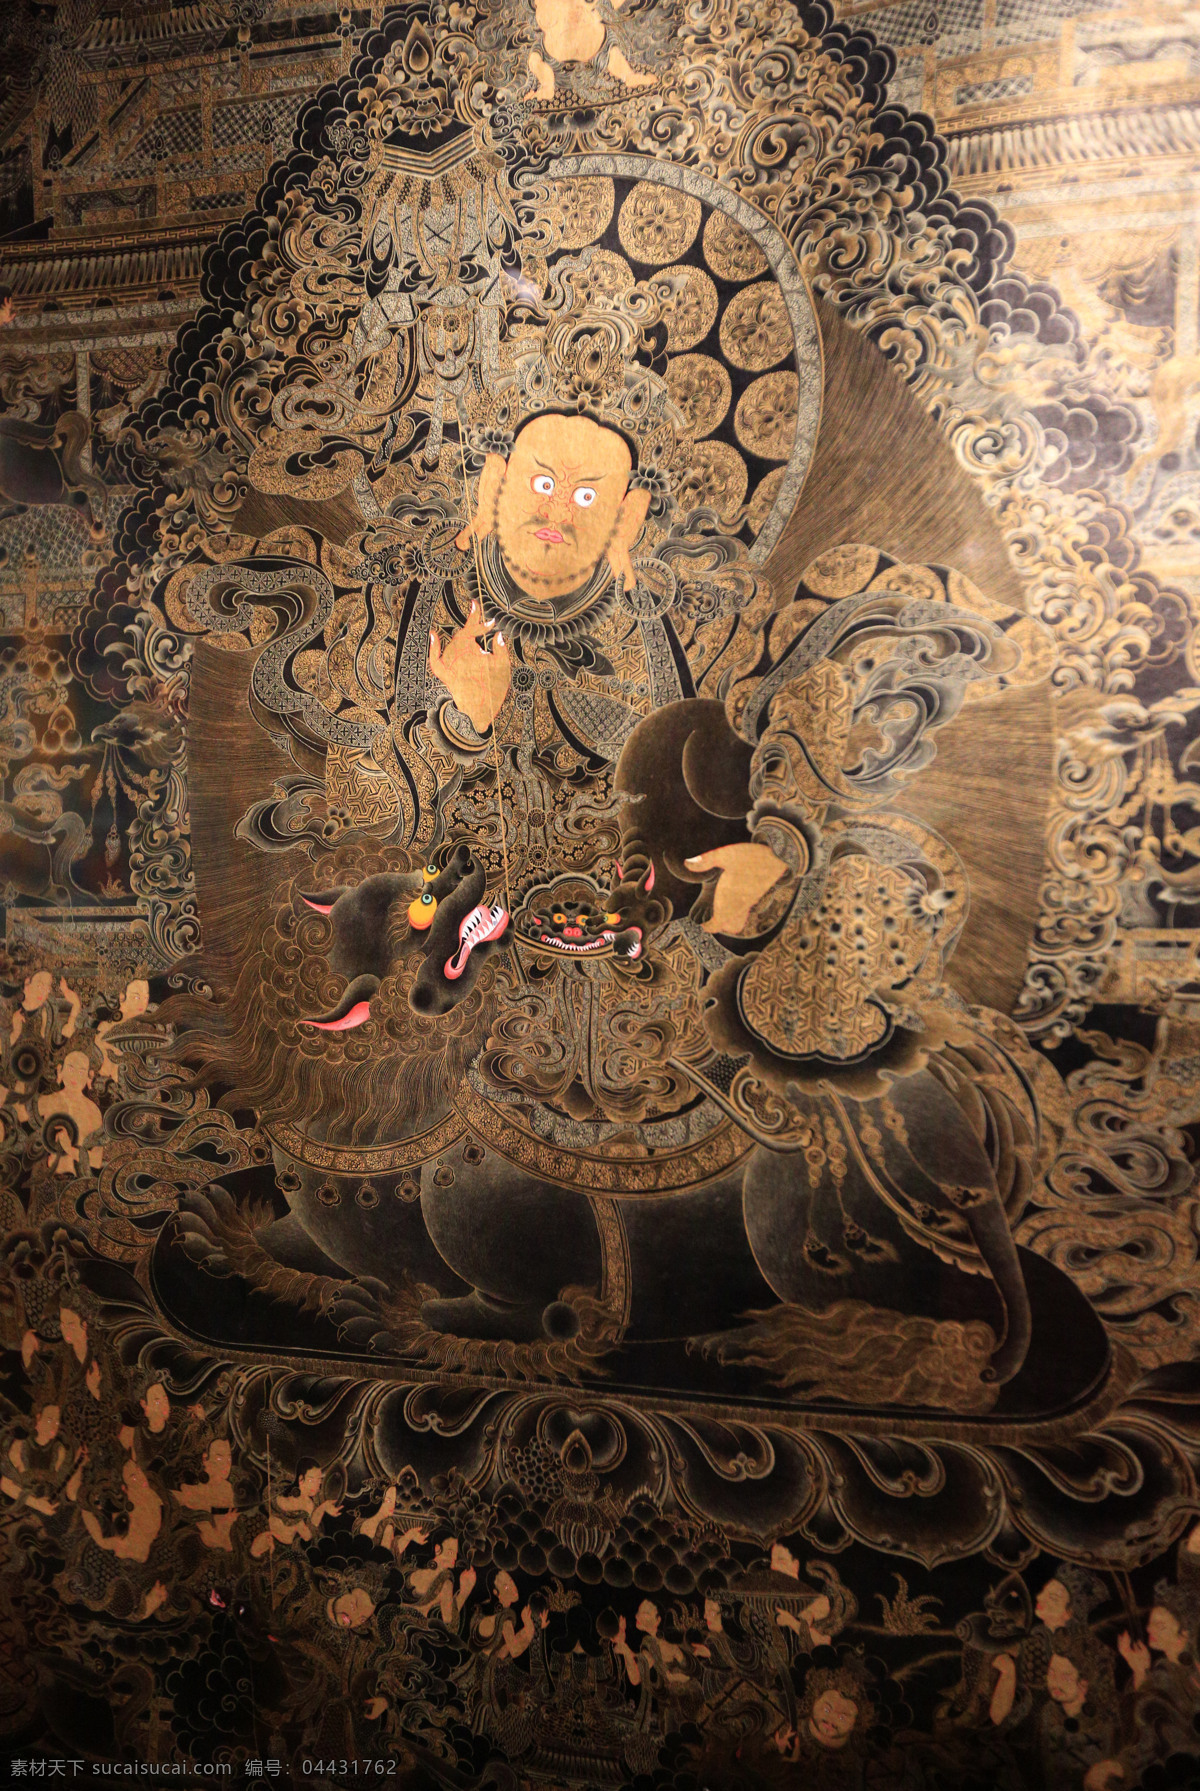 青海 藏 文化馆 壁画 青海藏文化馆 旅游 绘画书法 文化艺术 黑色